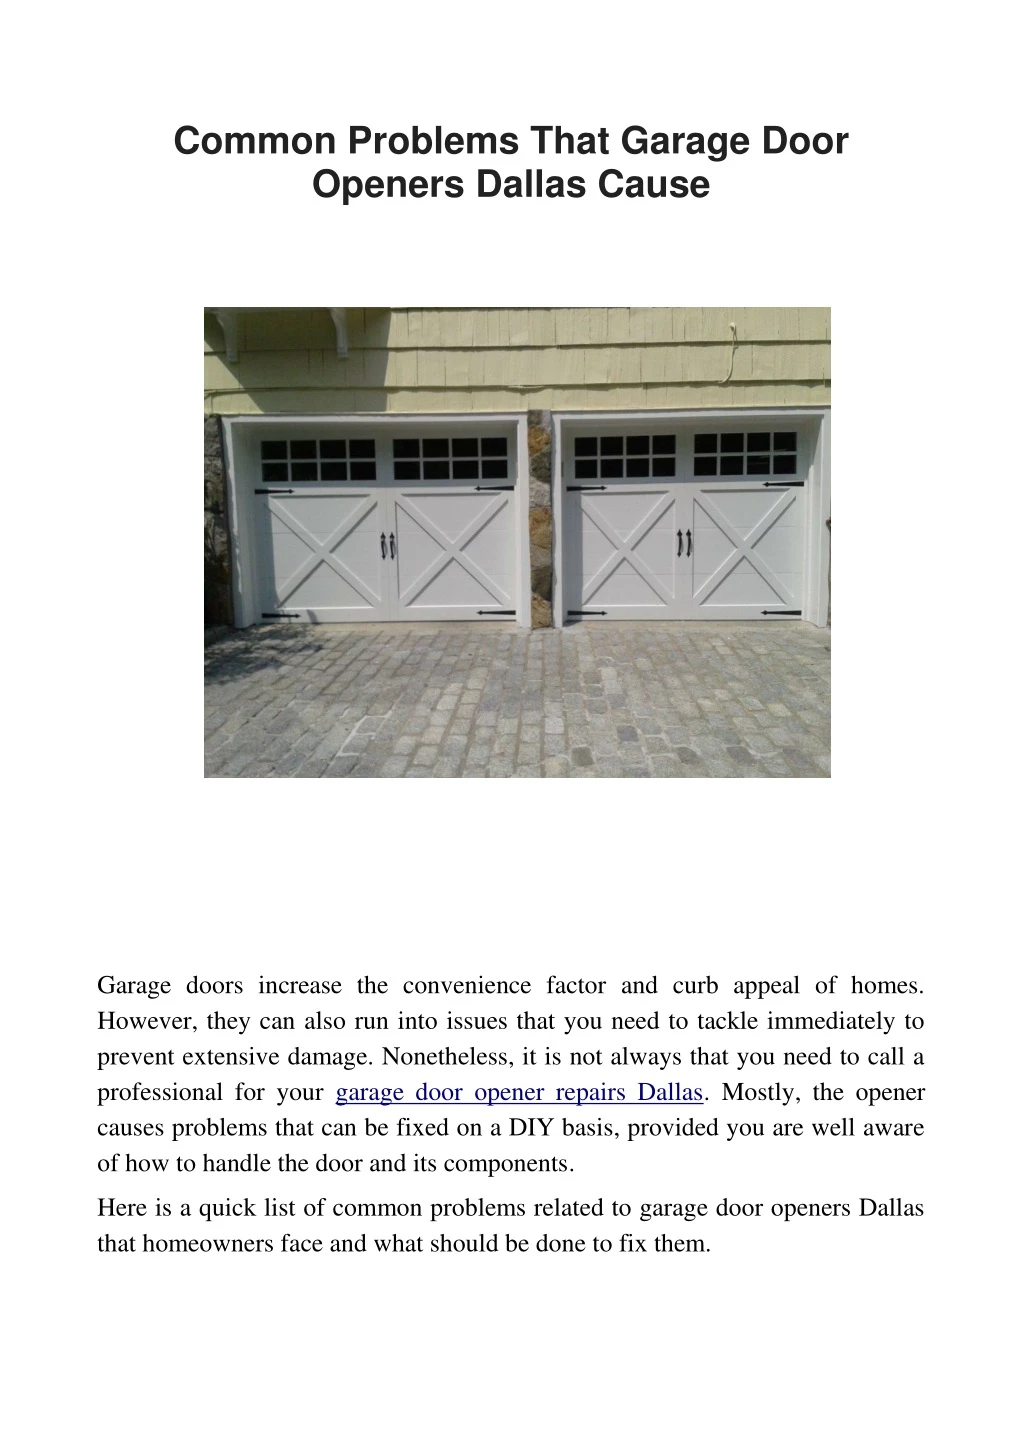 common problems that garage door openers dallas